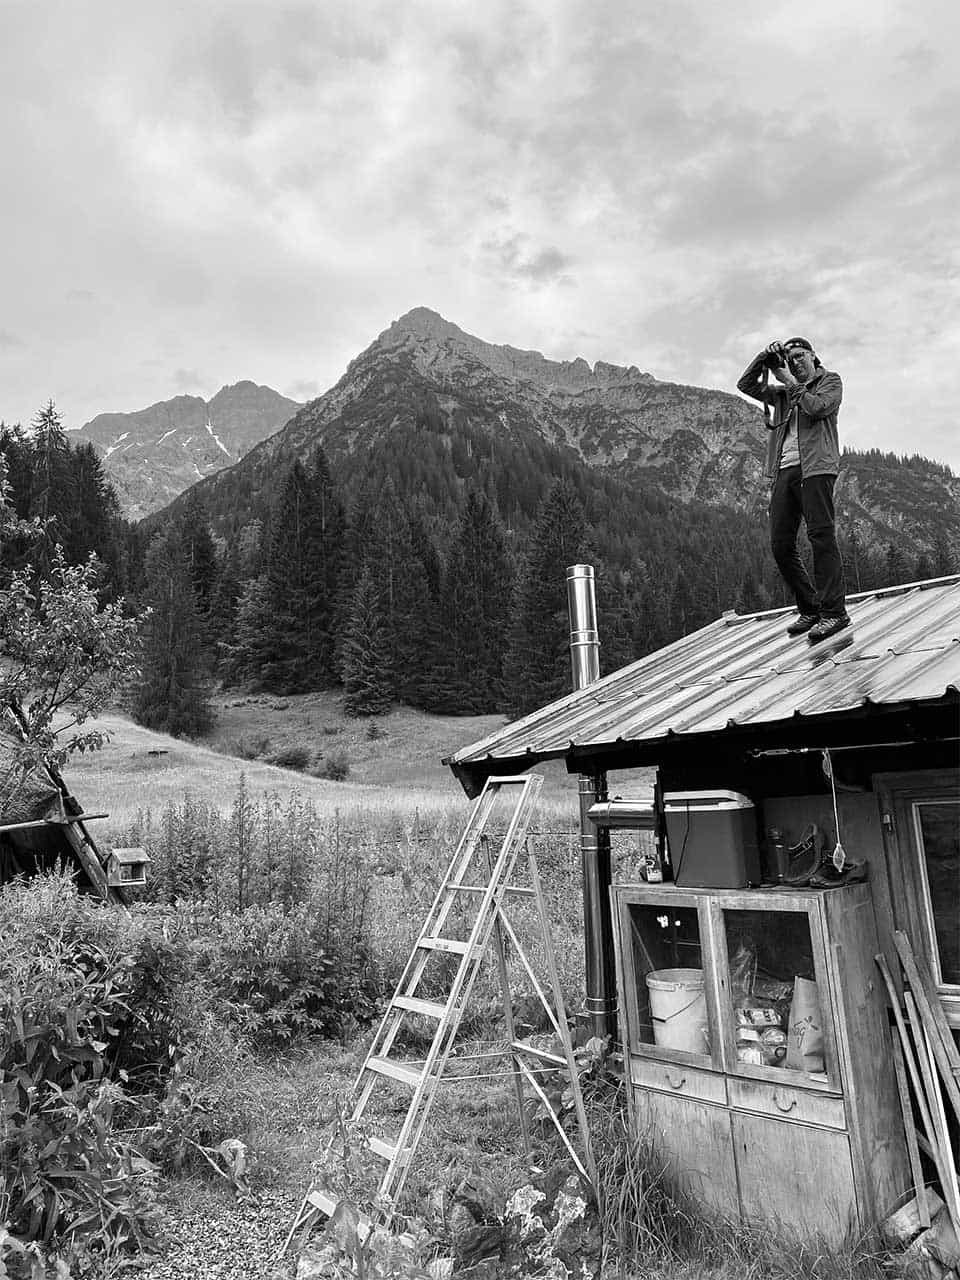 Fotograf Christopher Fuhrmann steht auf dem Dach einer Hütte in den Bergen